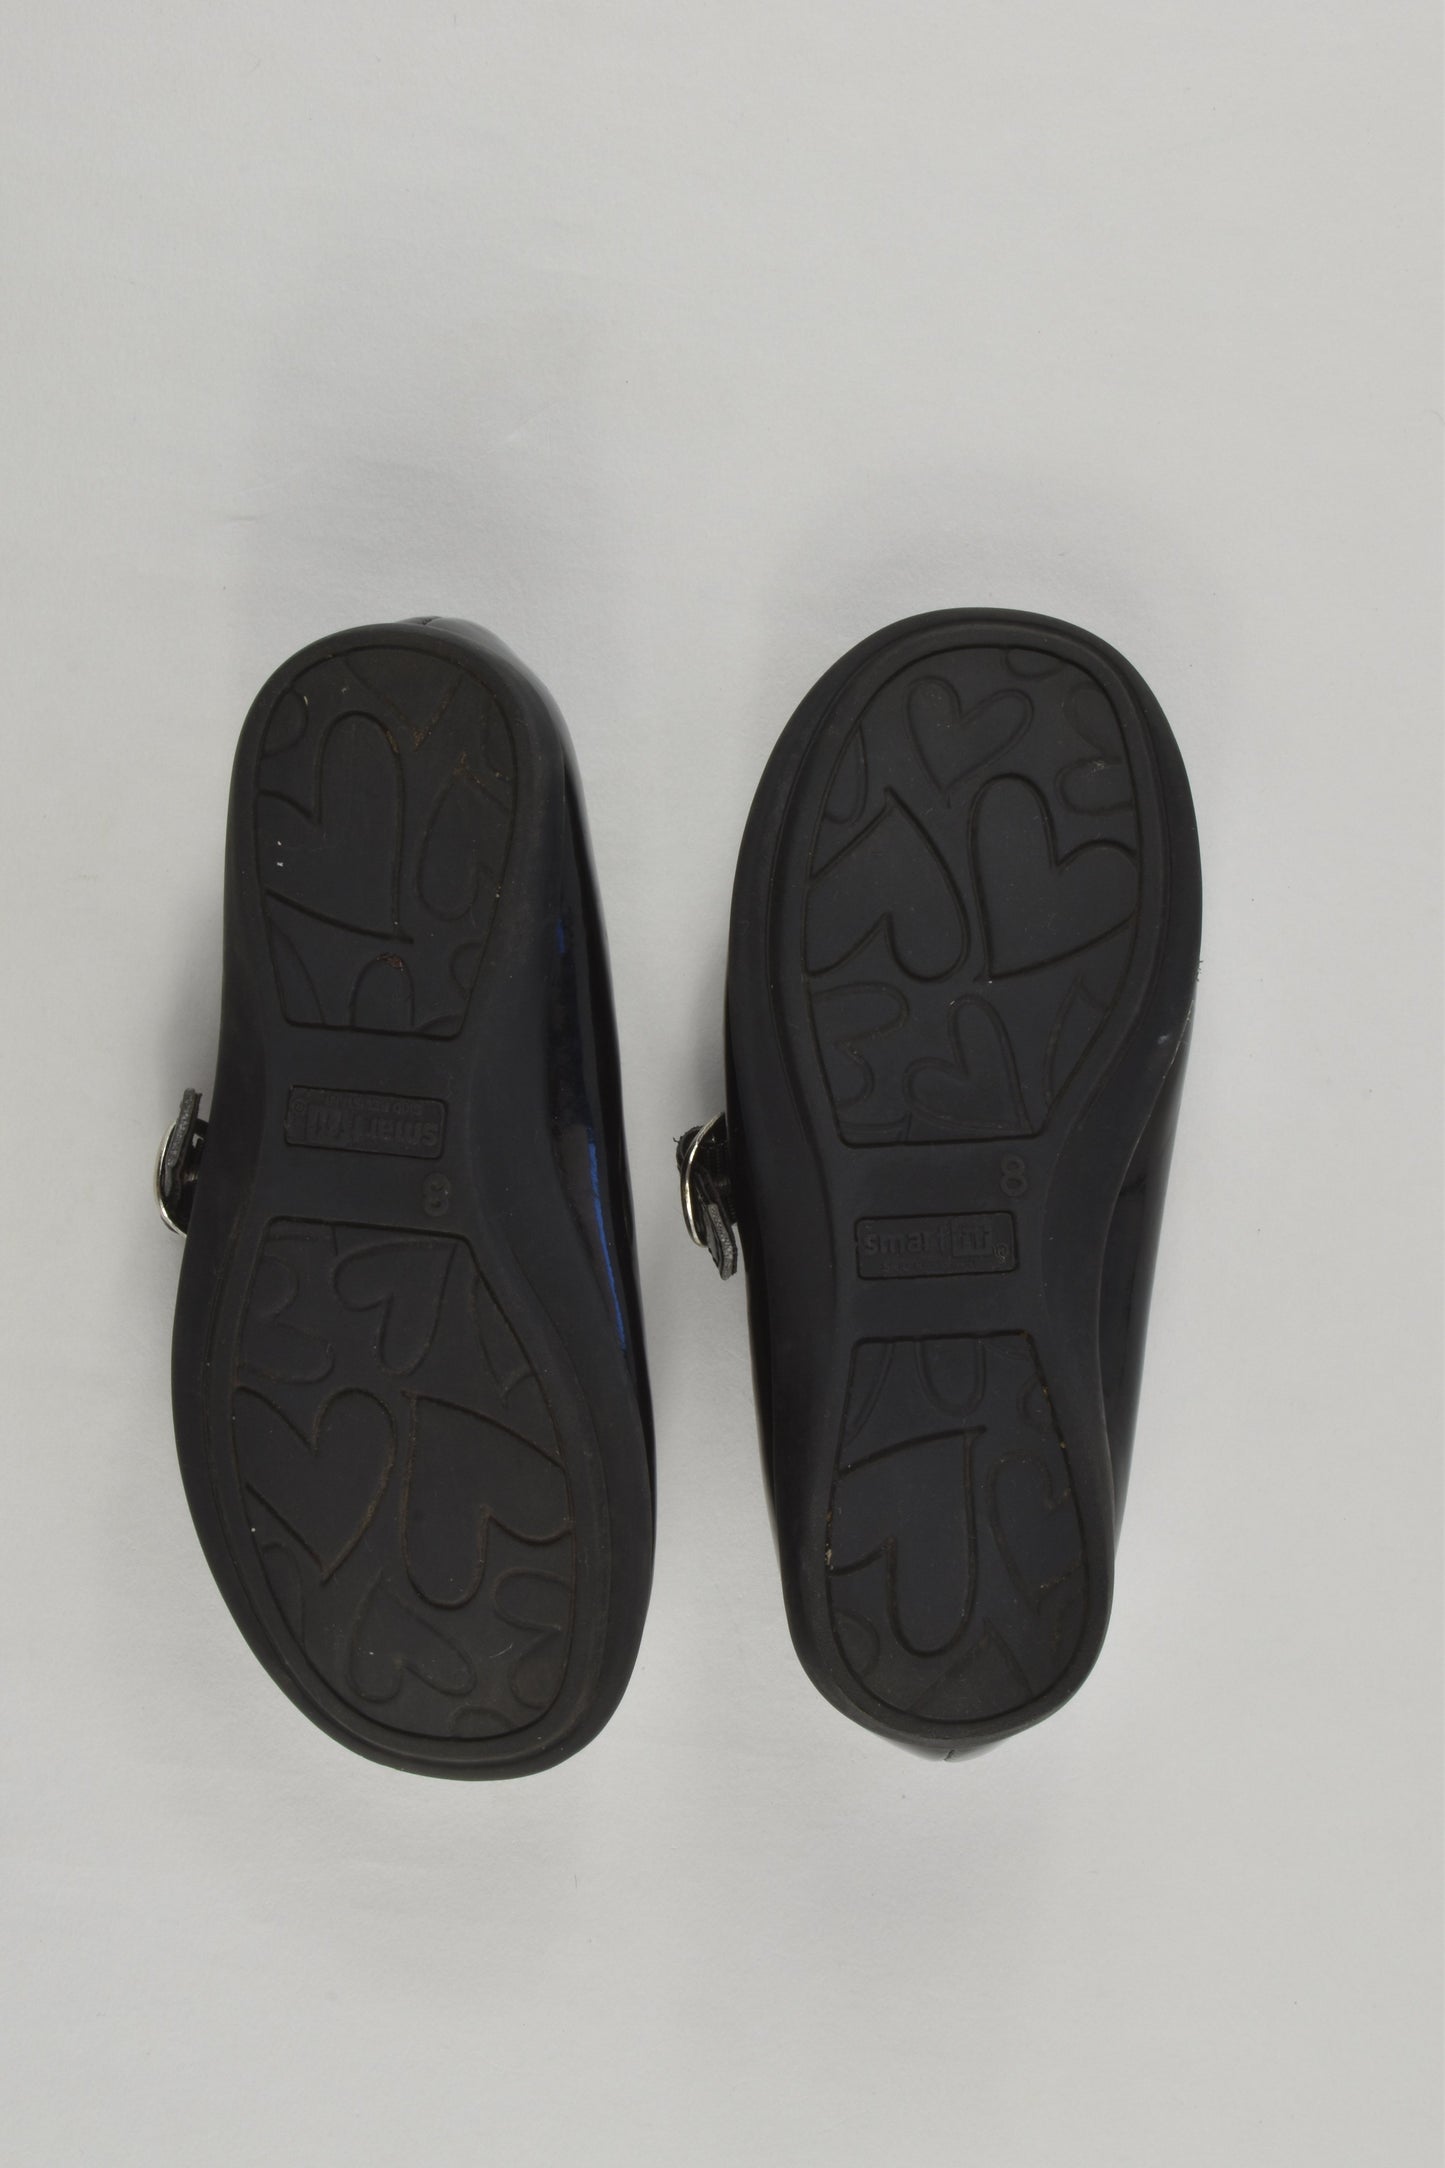 SmartFit Size US 8 Shoes